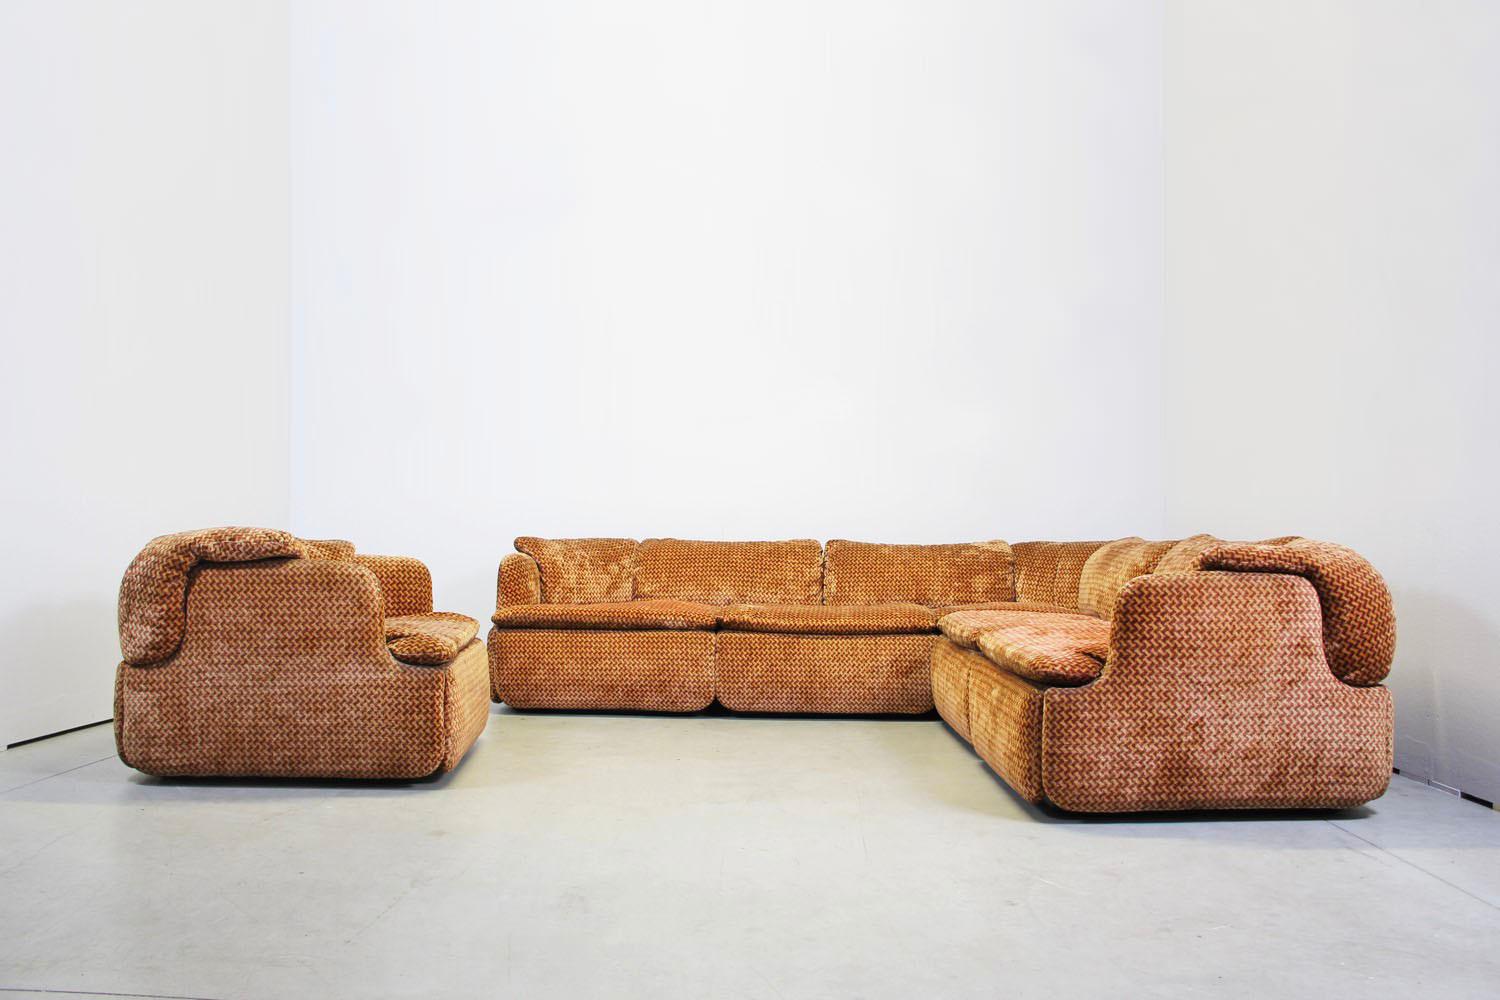 Dieses Sofa ist aus der Manufaktur Saporiti Italia und hat einen rot-orangen Stoff. 
Das Sofa besteht aus 2 Modulen und auch 1 Sessel ist enthalten. 
Guter Zustand

Abmessungen: Sofa
Breite 240 cm
Tiefe 240 cm
Tiefe 85 cm
Höhe 69 cm
Sitzhöhe 40